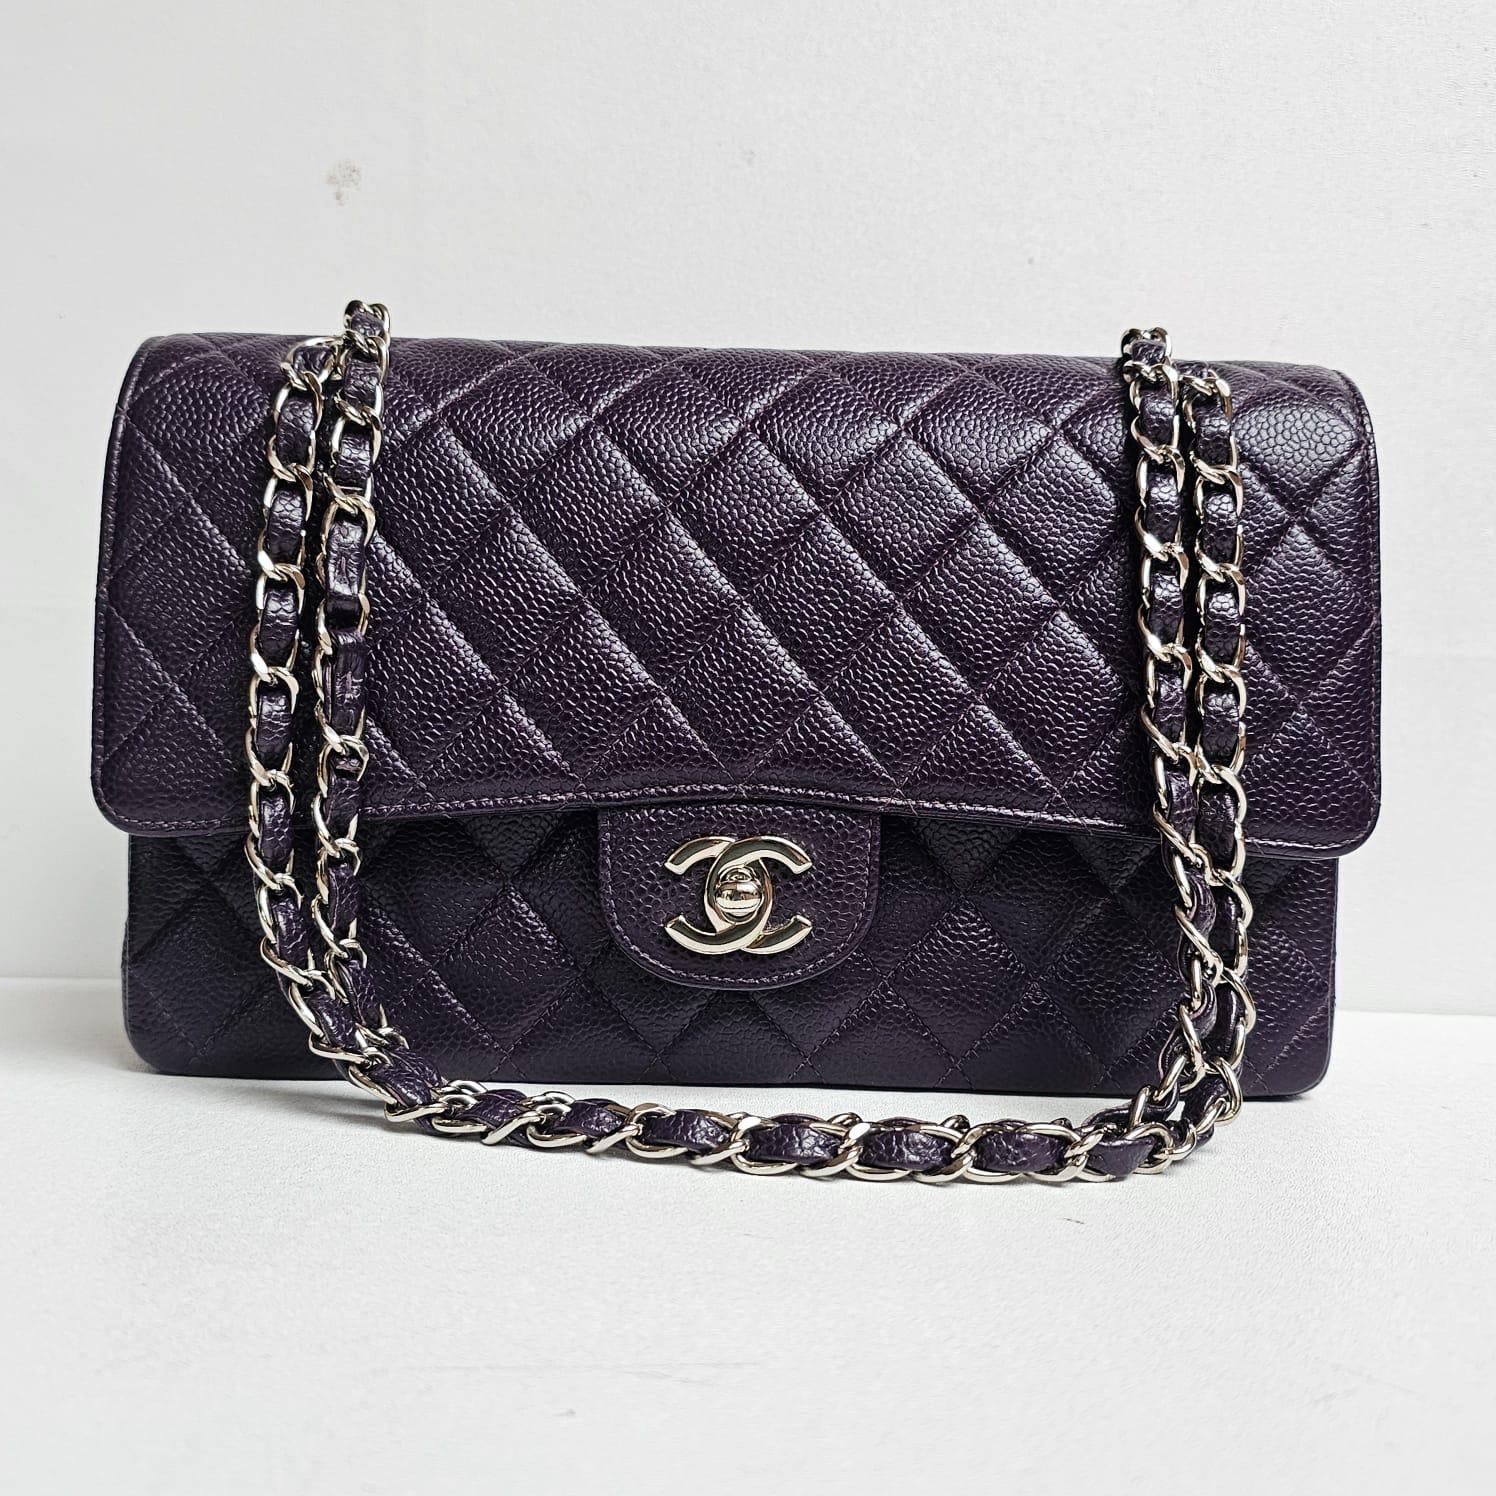 Chanel classique de taille moyenne, de couleur violet foncé rare, avec des accessoires argentés. Vintage série 6. Dans l'ensemble en très bon état structuré. Légères éraflures sur la doublure en cuir et les coins. Livré avec son holo, sa carte et